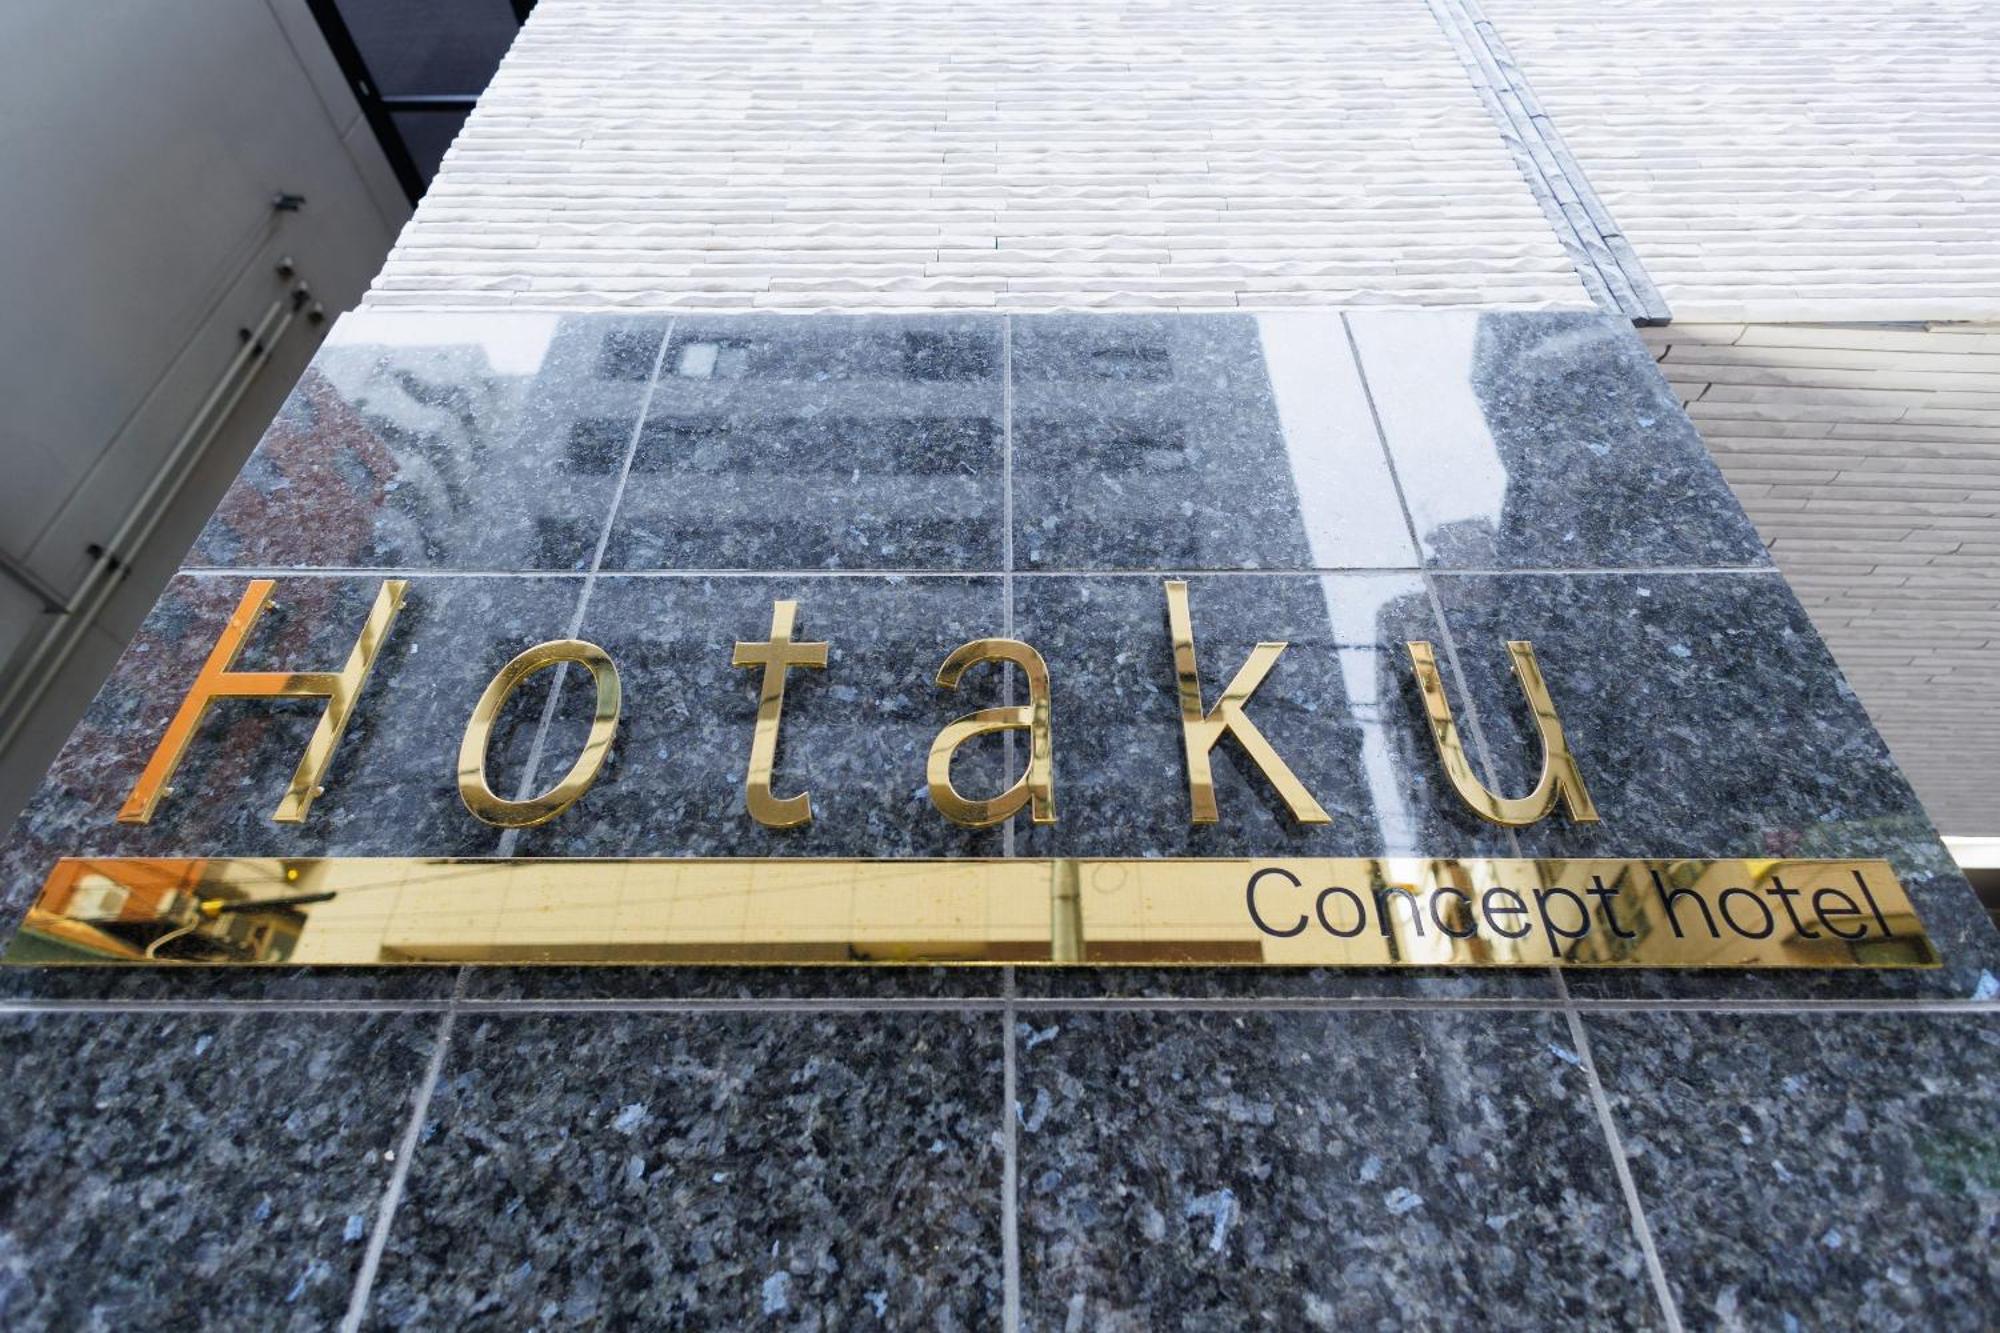 Hotaku Hotel Akihabara 東京都 外观 照片